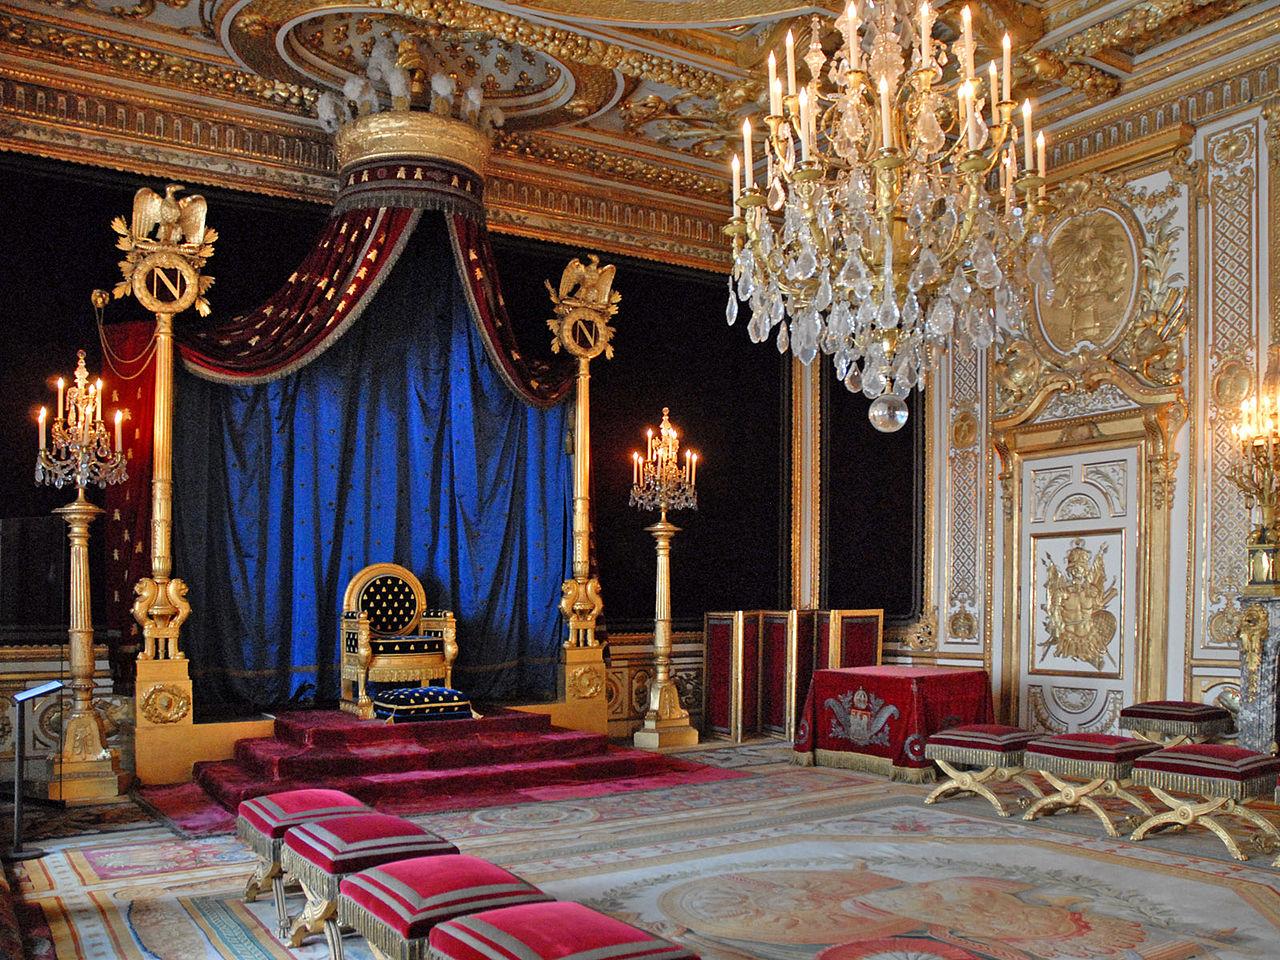 欧洲宫殿的王座厅(throne room)